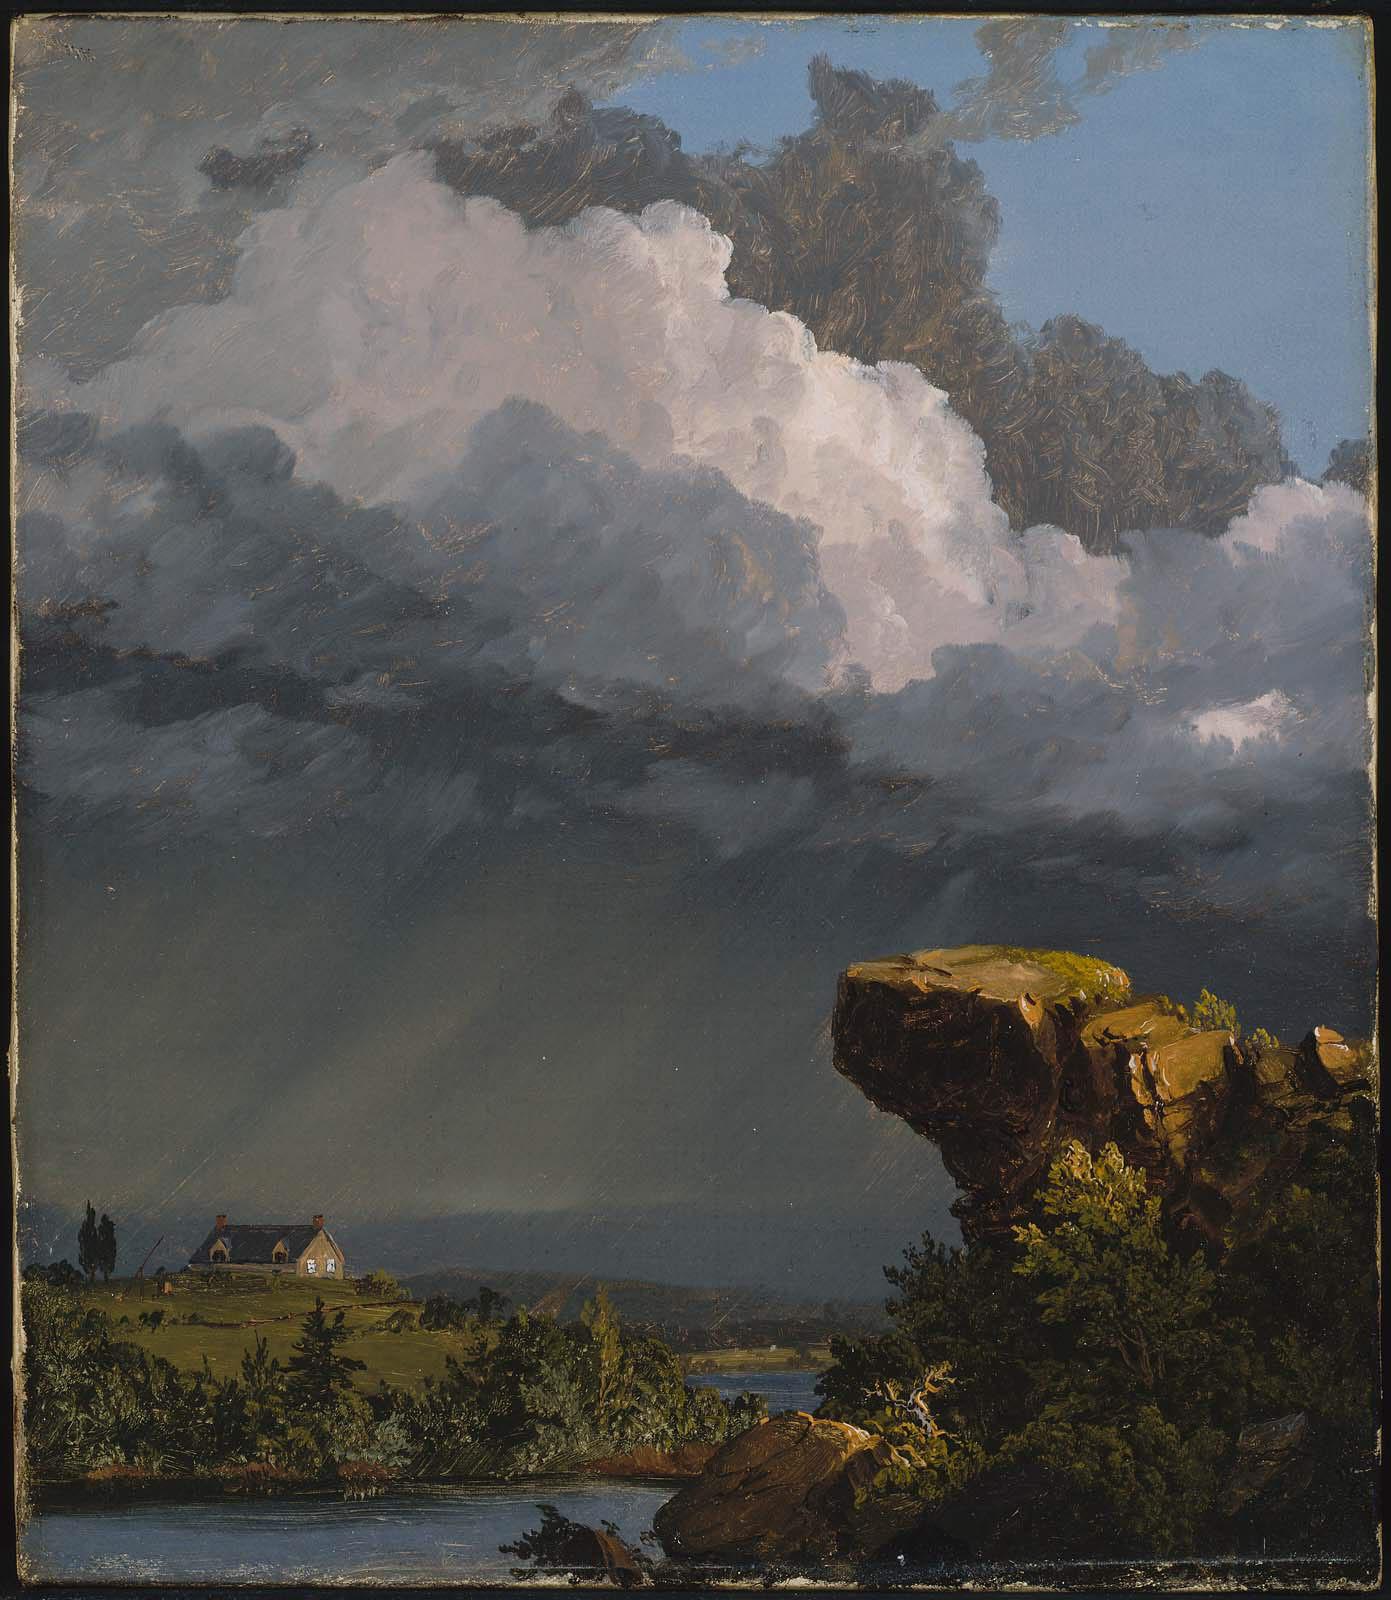 一場短暫的風暴 by Frederic Edwin Church - 1849 年 - 35.88 x 30.48 釐米 